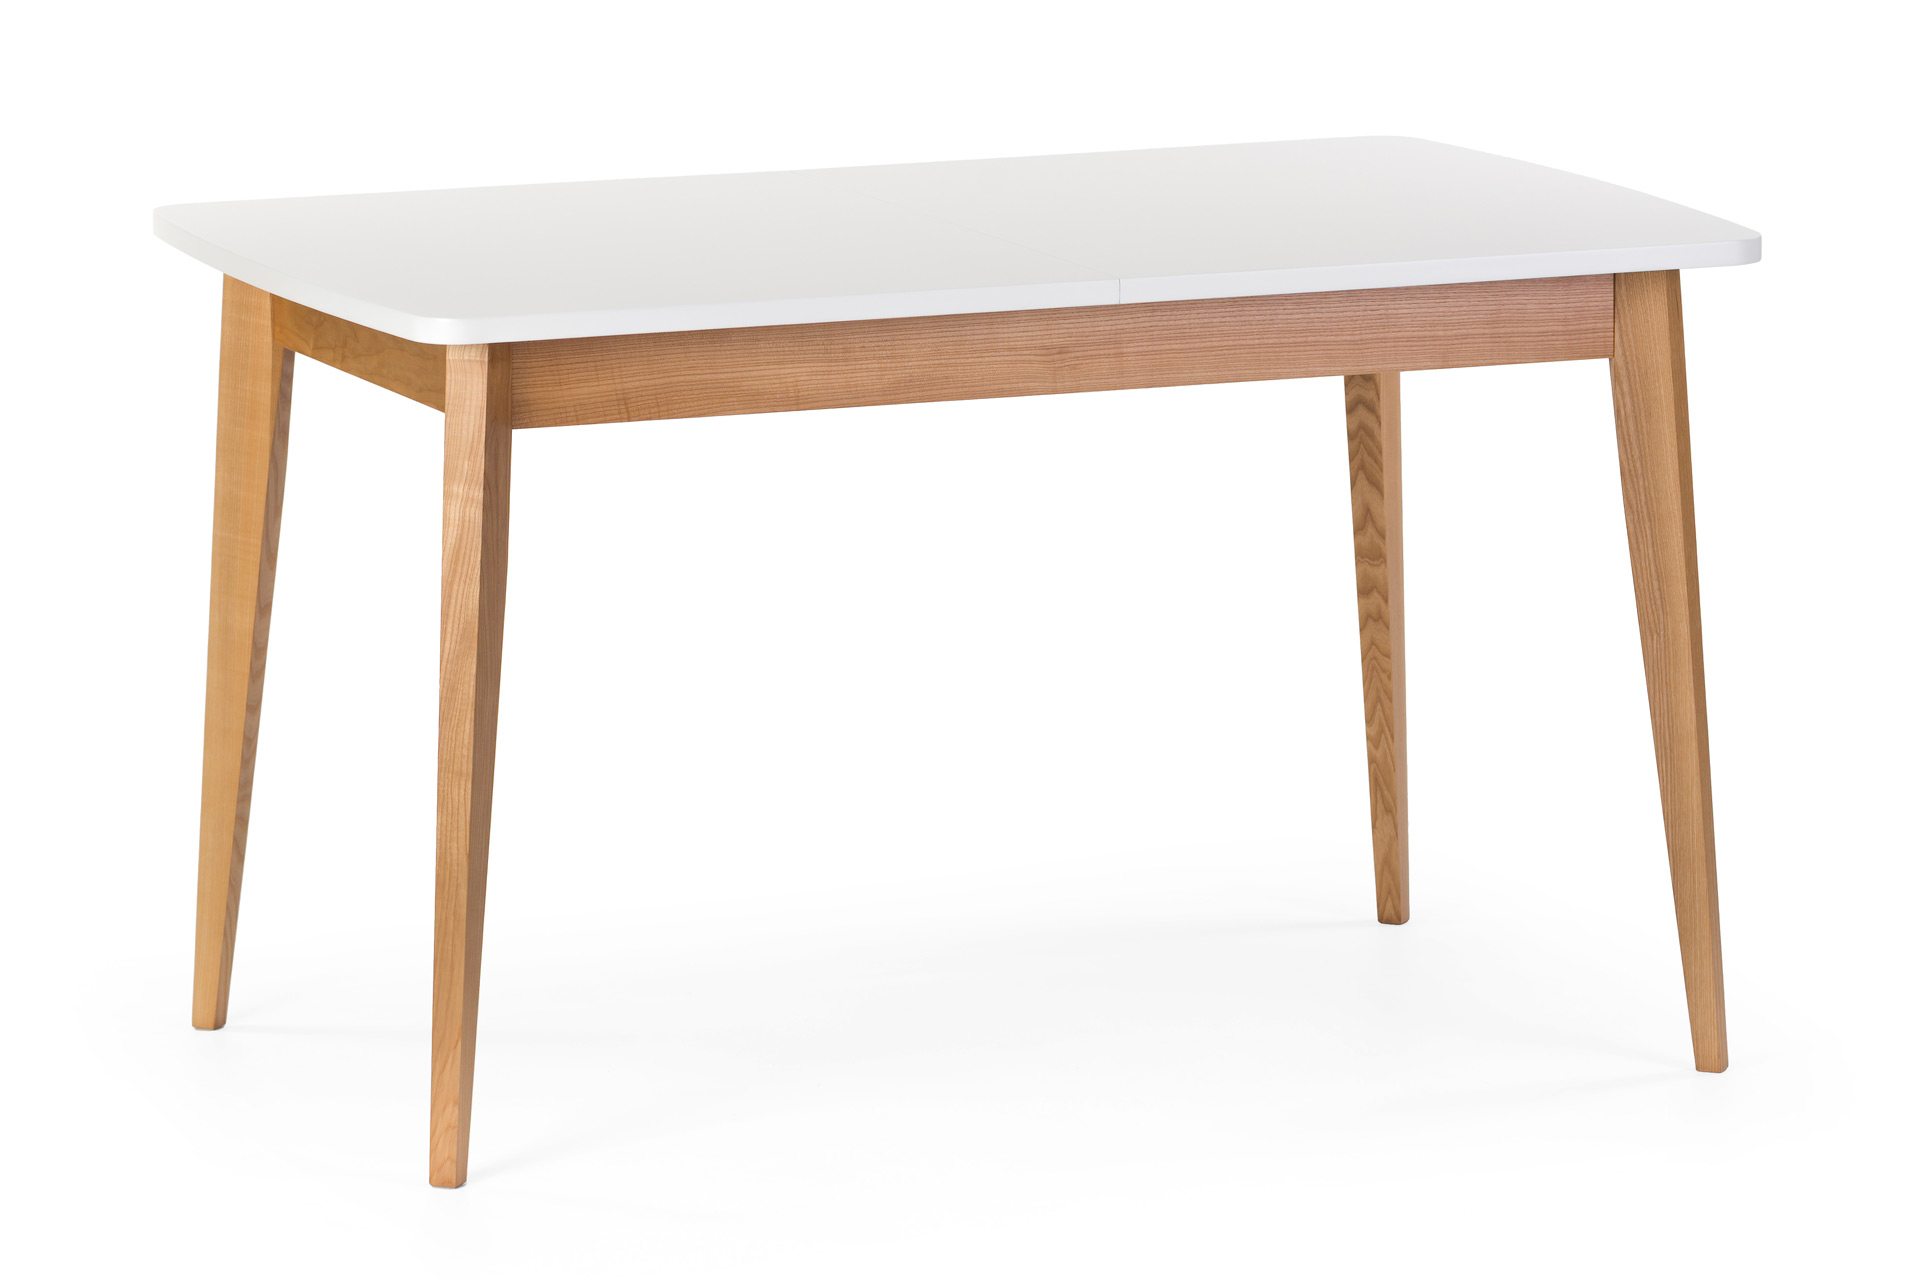 Розкладний кухонний стіл "Турін" - прямокутна біла стільниця покрита емаллю, ніжки та царга з твердого дерева, тоновані, колір SE1403